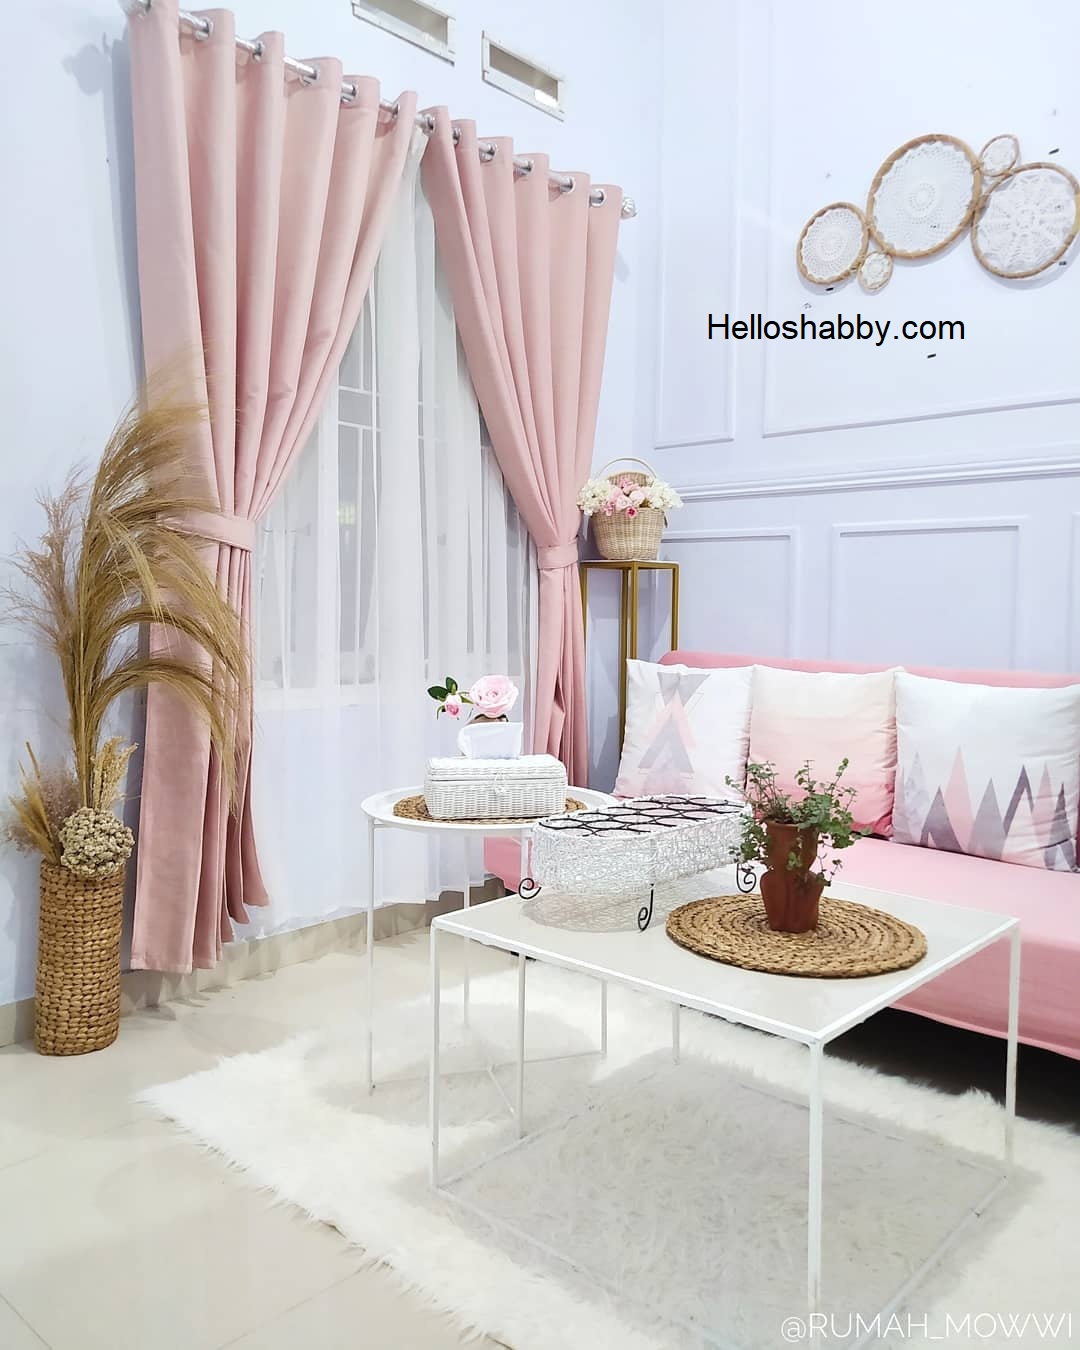 Desain Ruang Tamu Mungil Dengan Sentuhan Warna Pink Pastel